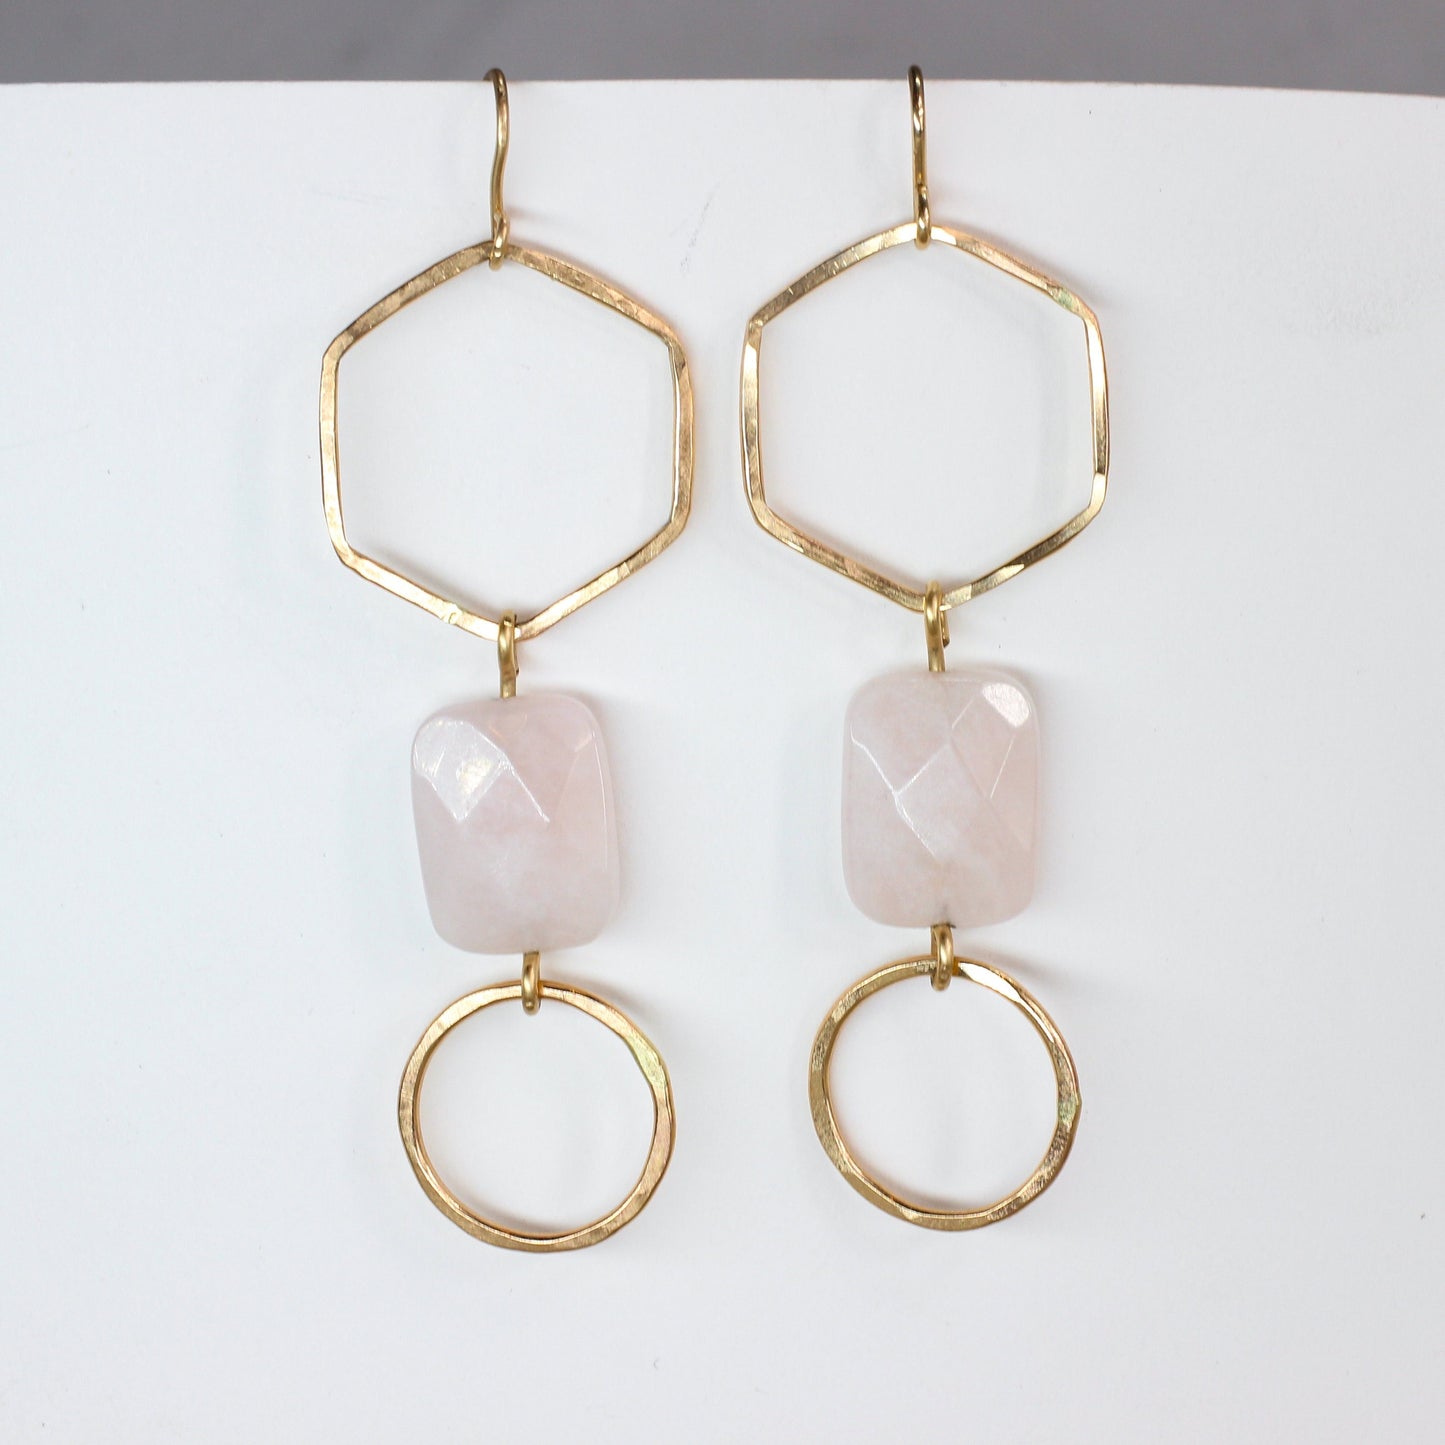 Gold Rose Quartz Earrings // Long Geometric Minimalist Dangle Earrings Waterproof and Hypoallergenic // Hexagon Statement Pink Earrings